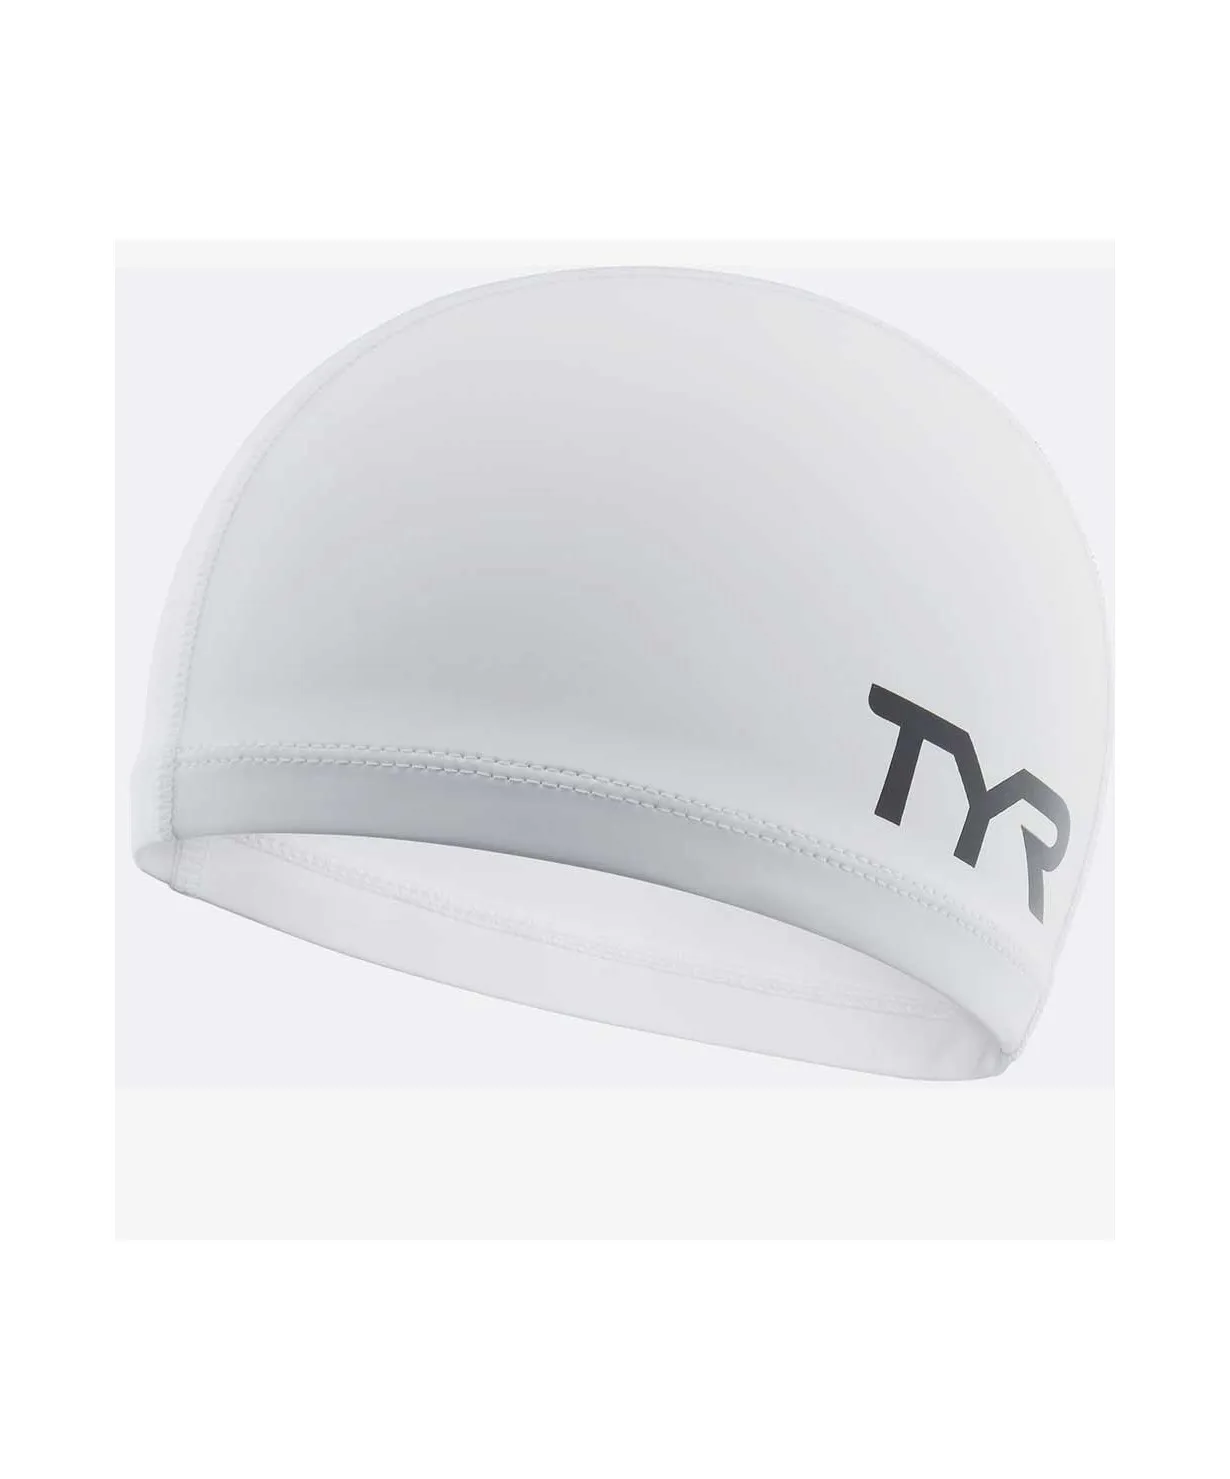 Шапочка для плавания Tyr Silicone Comfort Swim Cap силикон Lsccap/100 белый | Спорт и развлечения